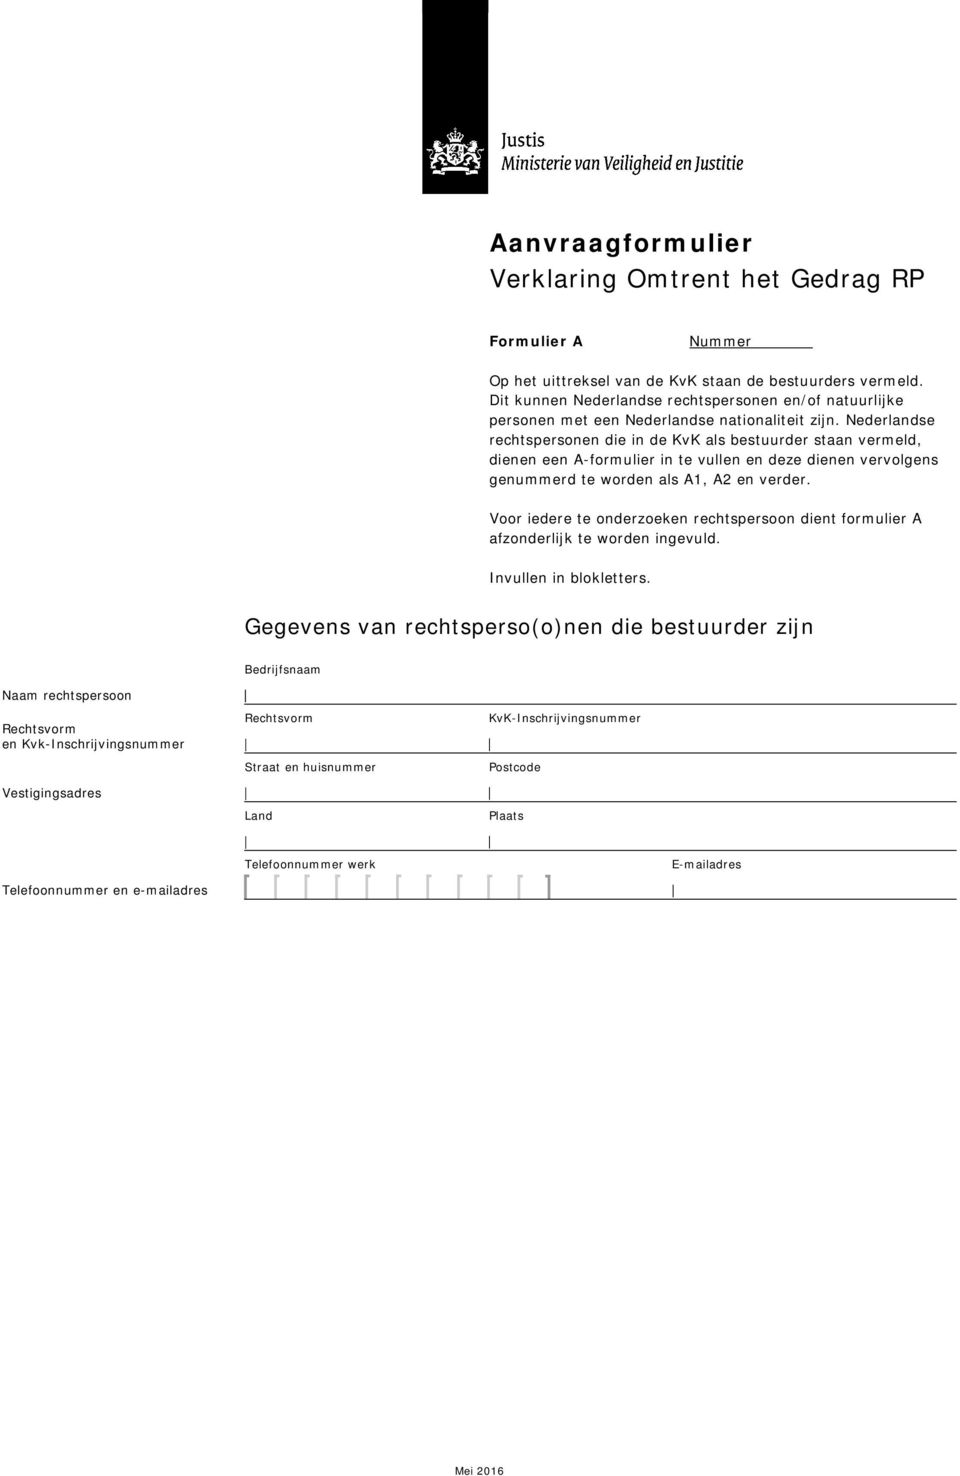 Nederlandse rechtspersonen die in de KvK als bestuurder staan vermeld, dienen een A-formulier in te vullen en deze dienen vervolgens genummerd te worden als A1,